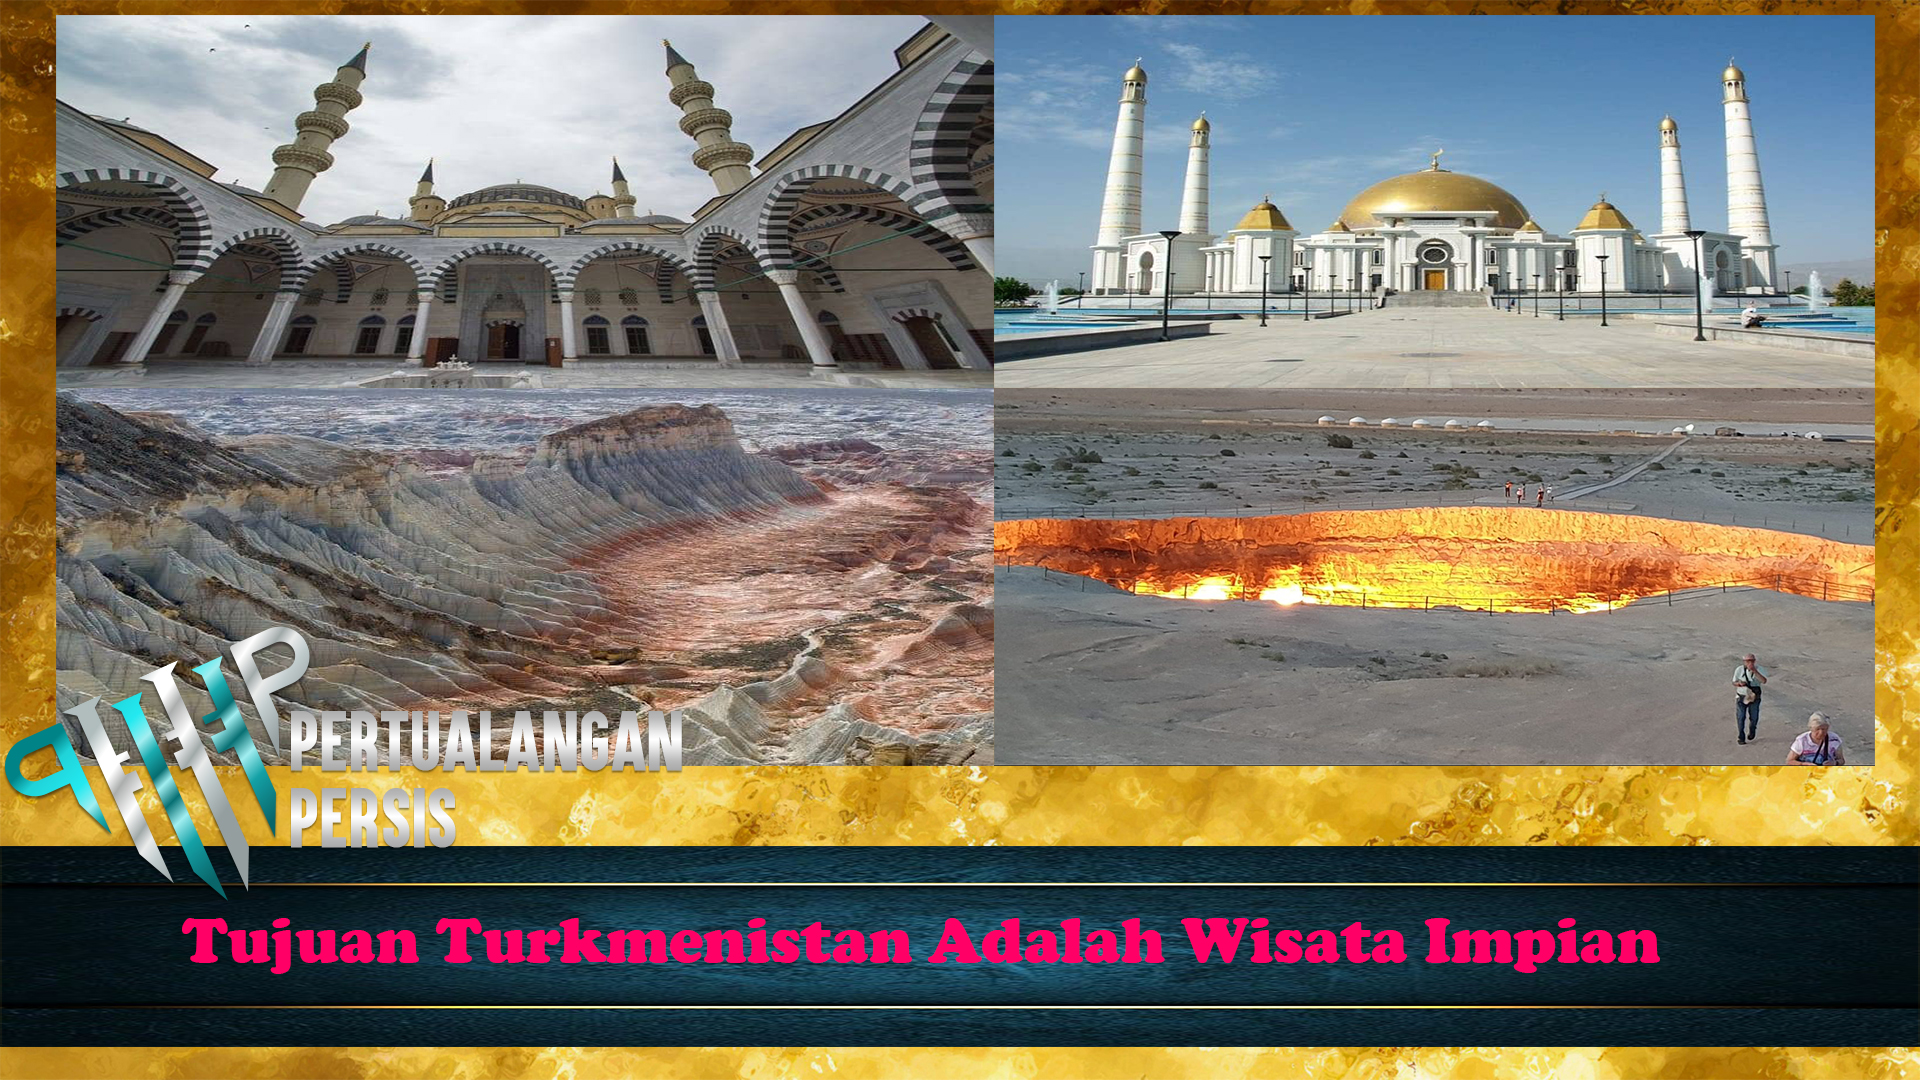 Tujuan Turkmenistan Adalah Wisata Impian